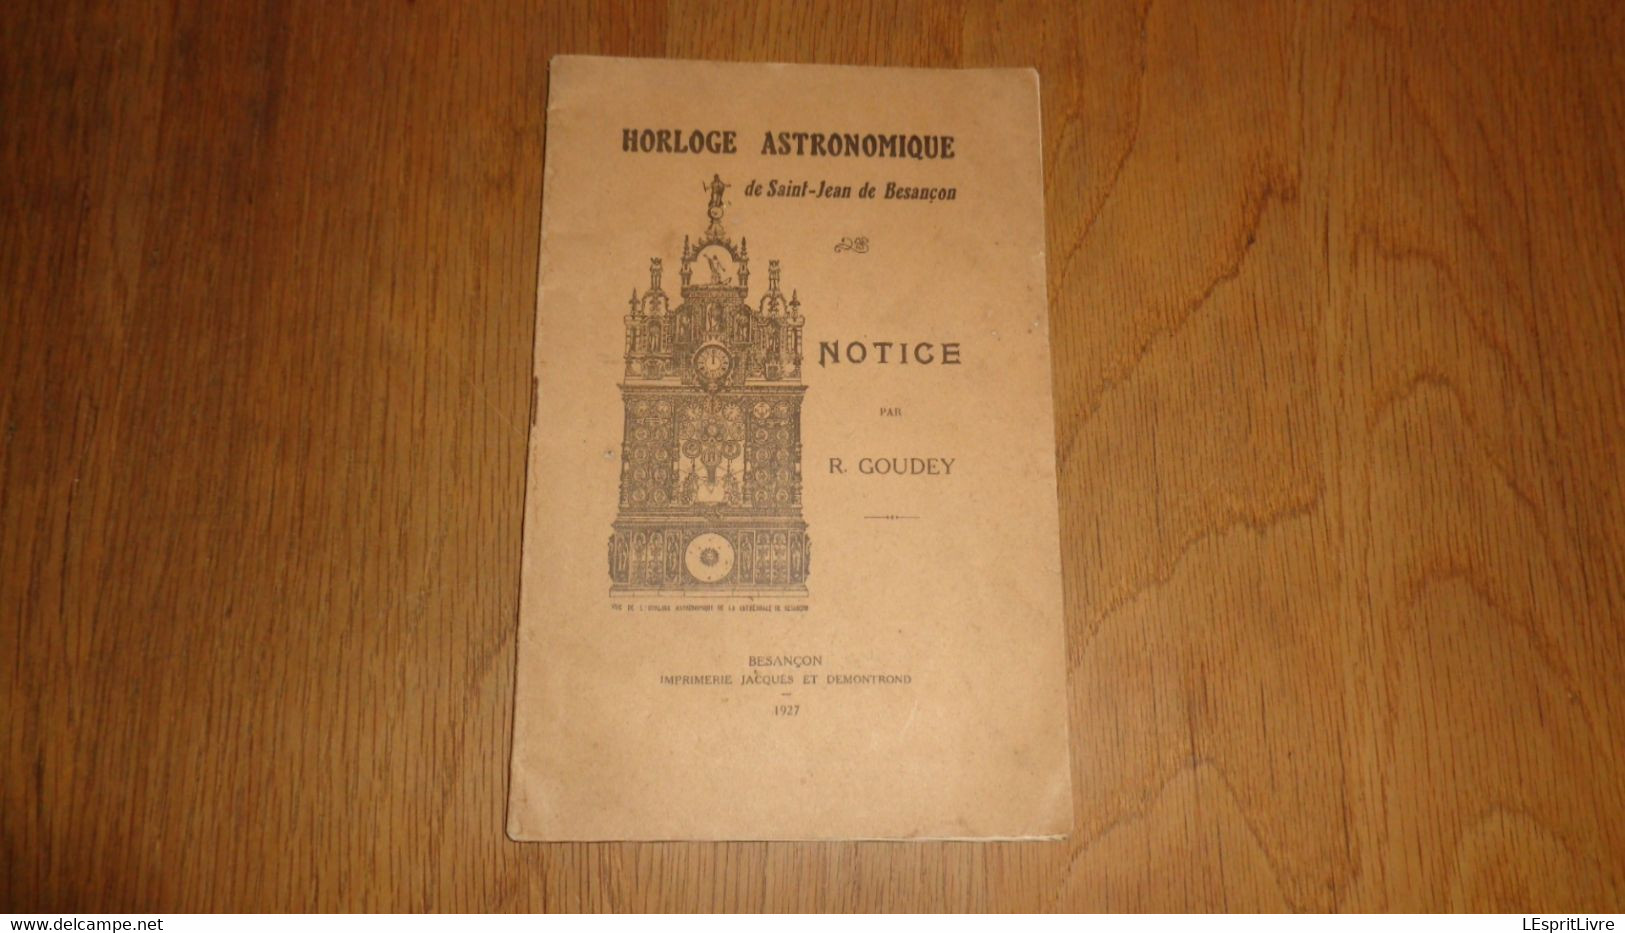 HORLOGE ASTRONOMIQUE DE SAINT JEAN DE BESANCON Notice Par R Goudey 1927 Régionalisme France Horlogerie Technique - Franche-Comté